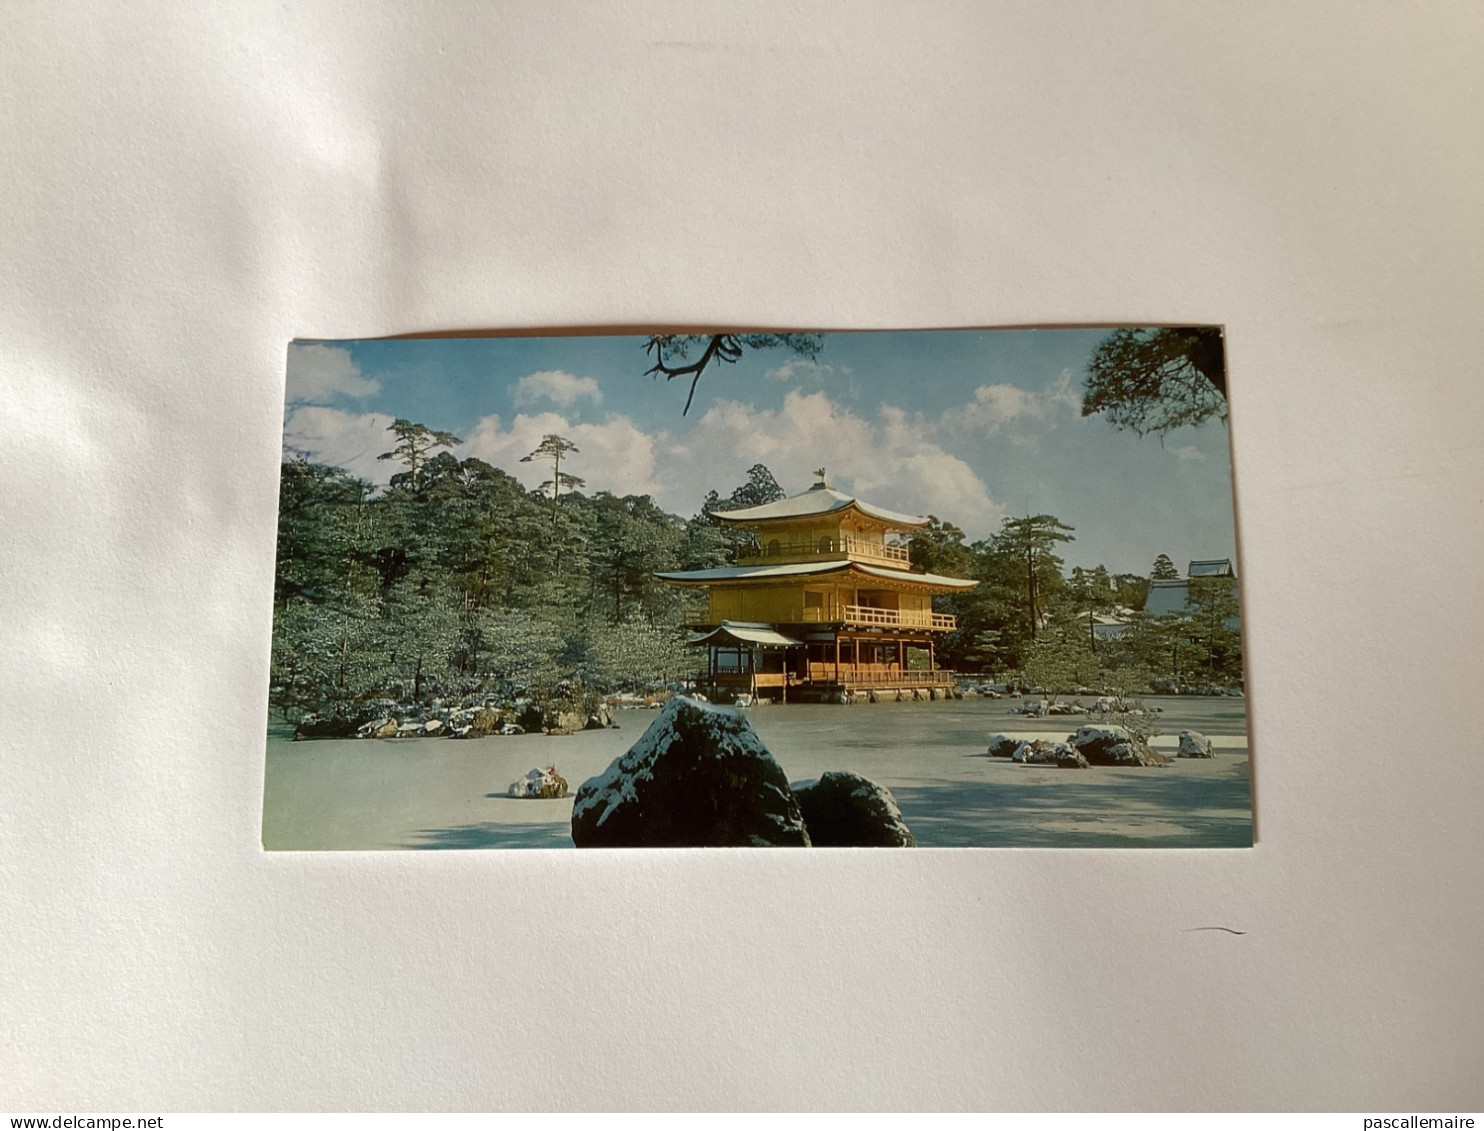 8 cartes postales gardens in Kyoto dans les années 1960